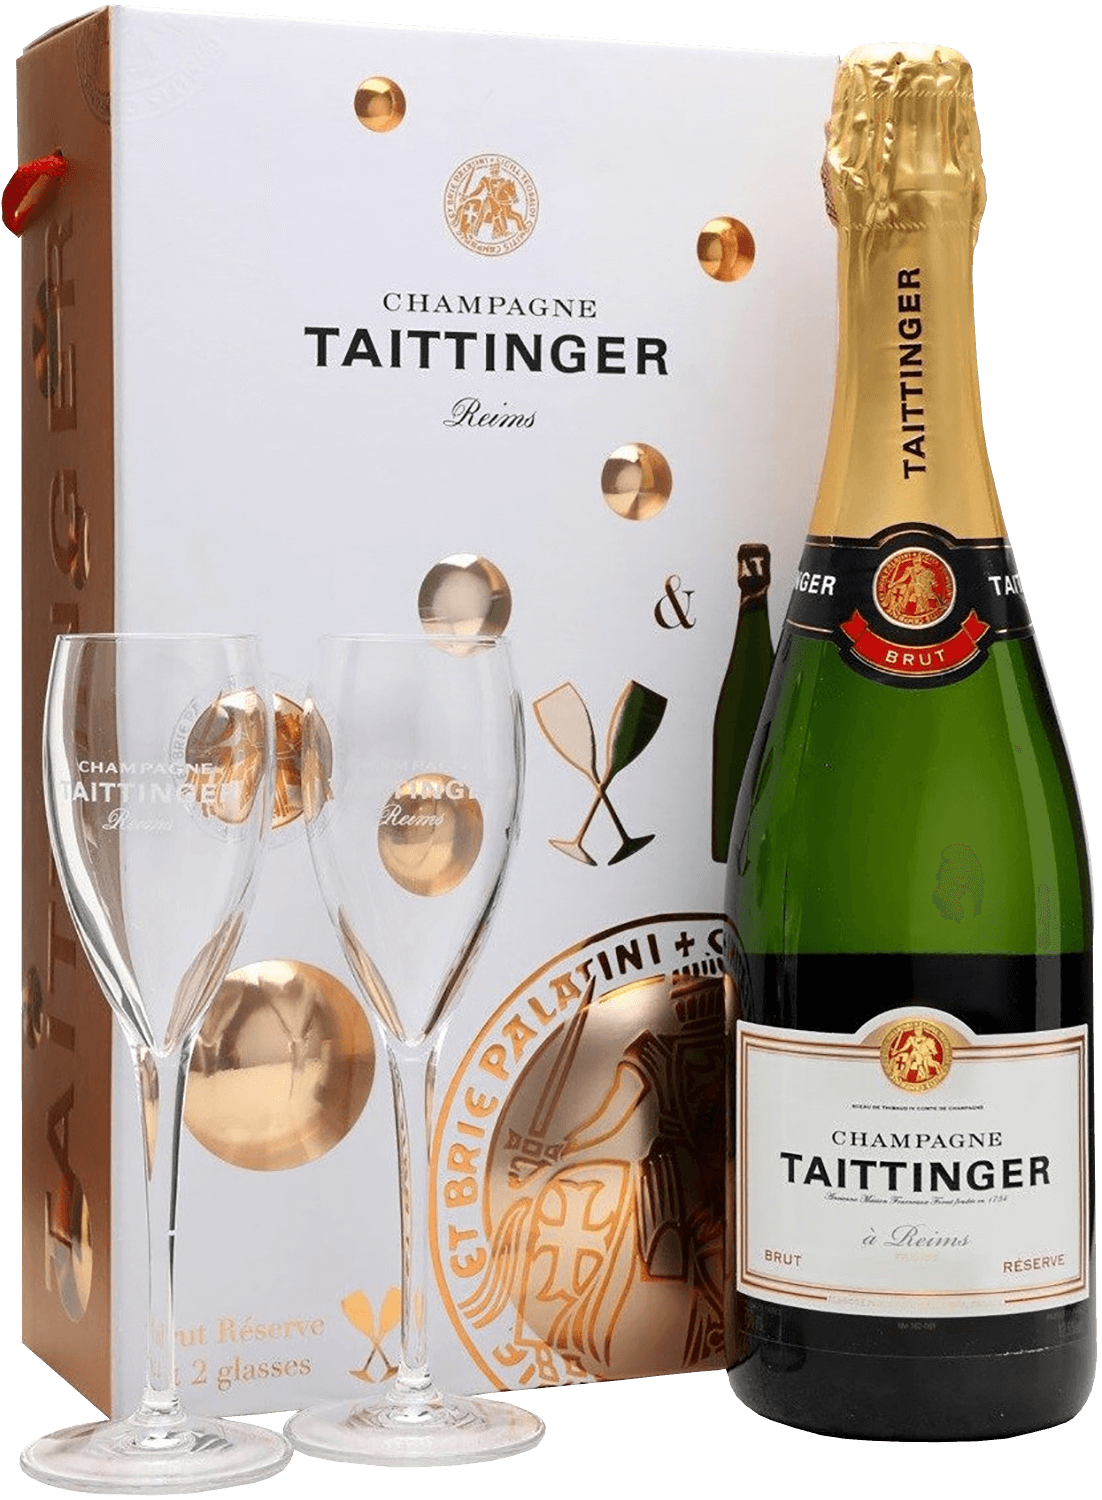 Taittinger Brut Reserve Champagne AOC (gift box) brut nature champagne aoc louis roederer gift box